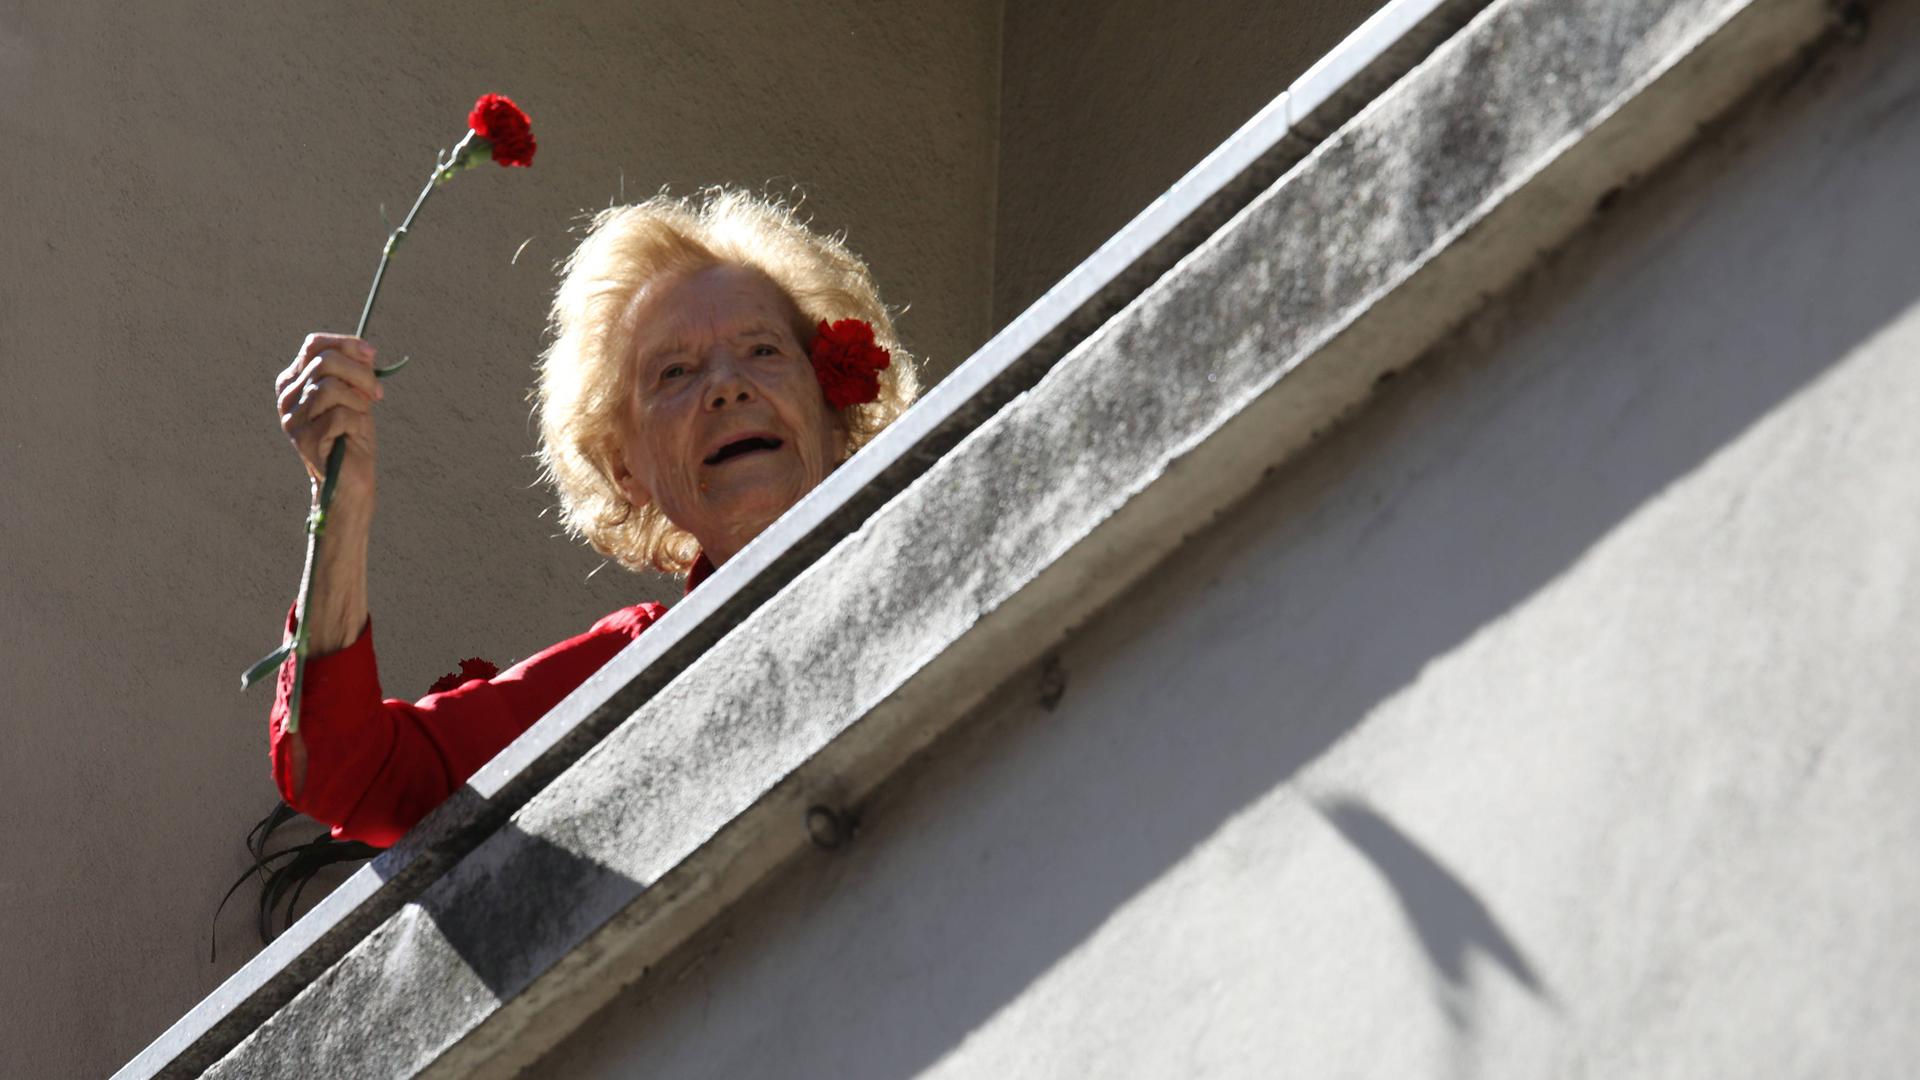 Jährlich wird der Nelkenrevolution in Portugal gedacht. Eine ältere Dame auf dem Balkon schwenkt eine rote Nelke. 